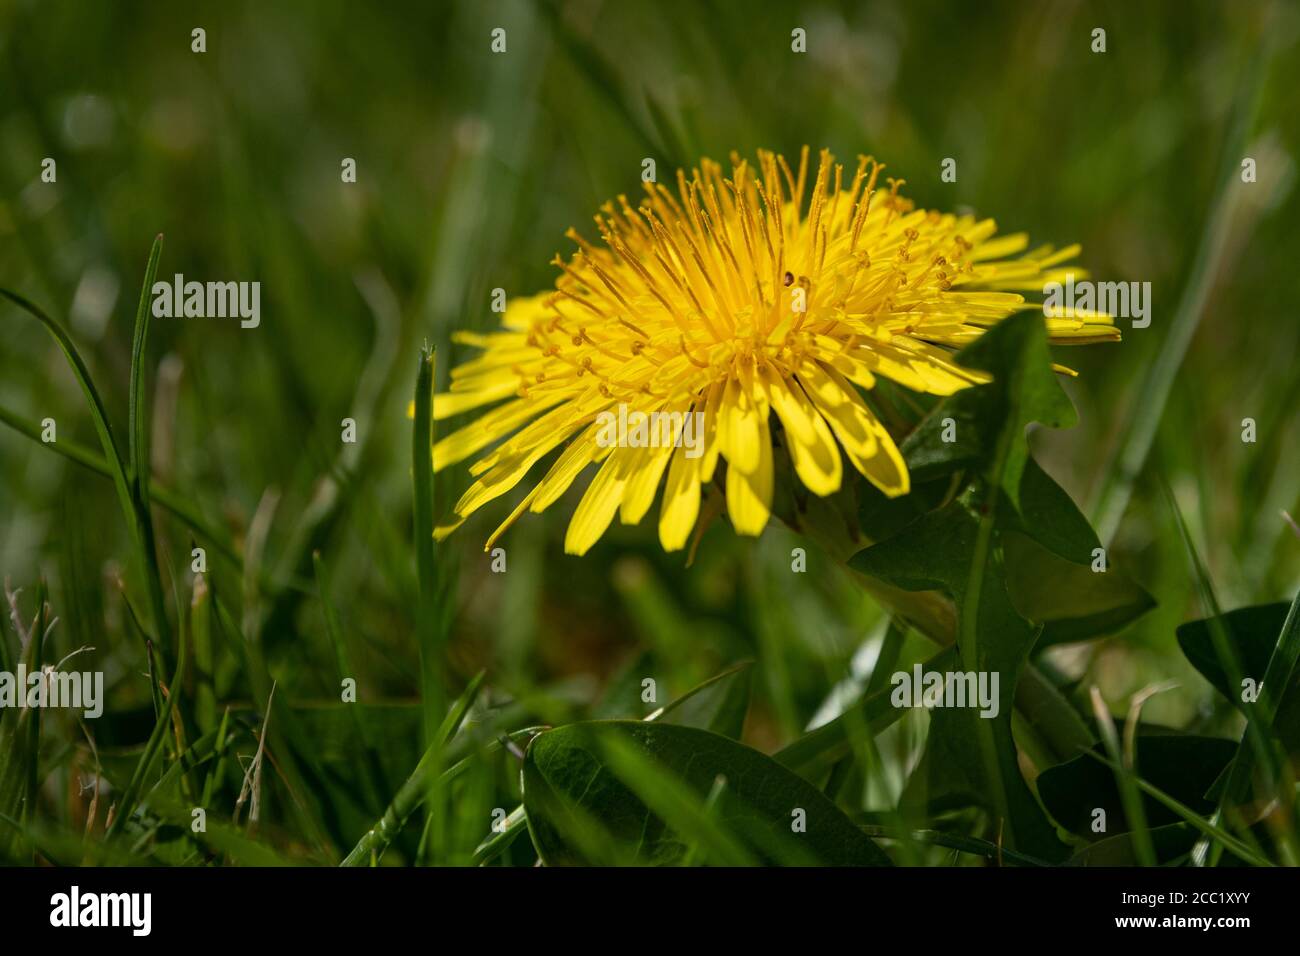 Dandelion flower in lawn Stock Photo